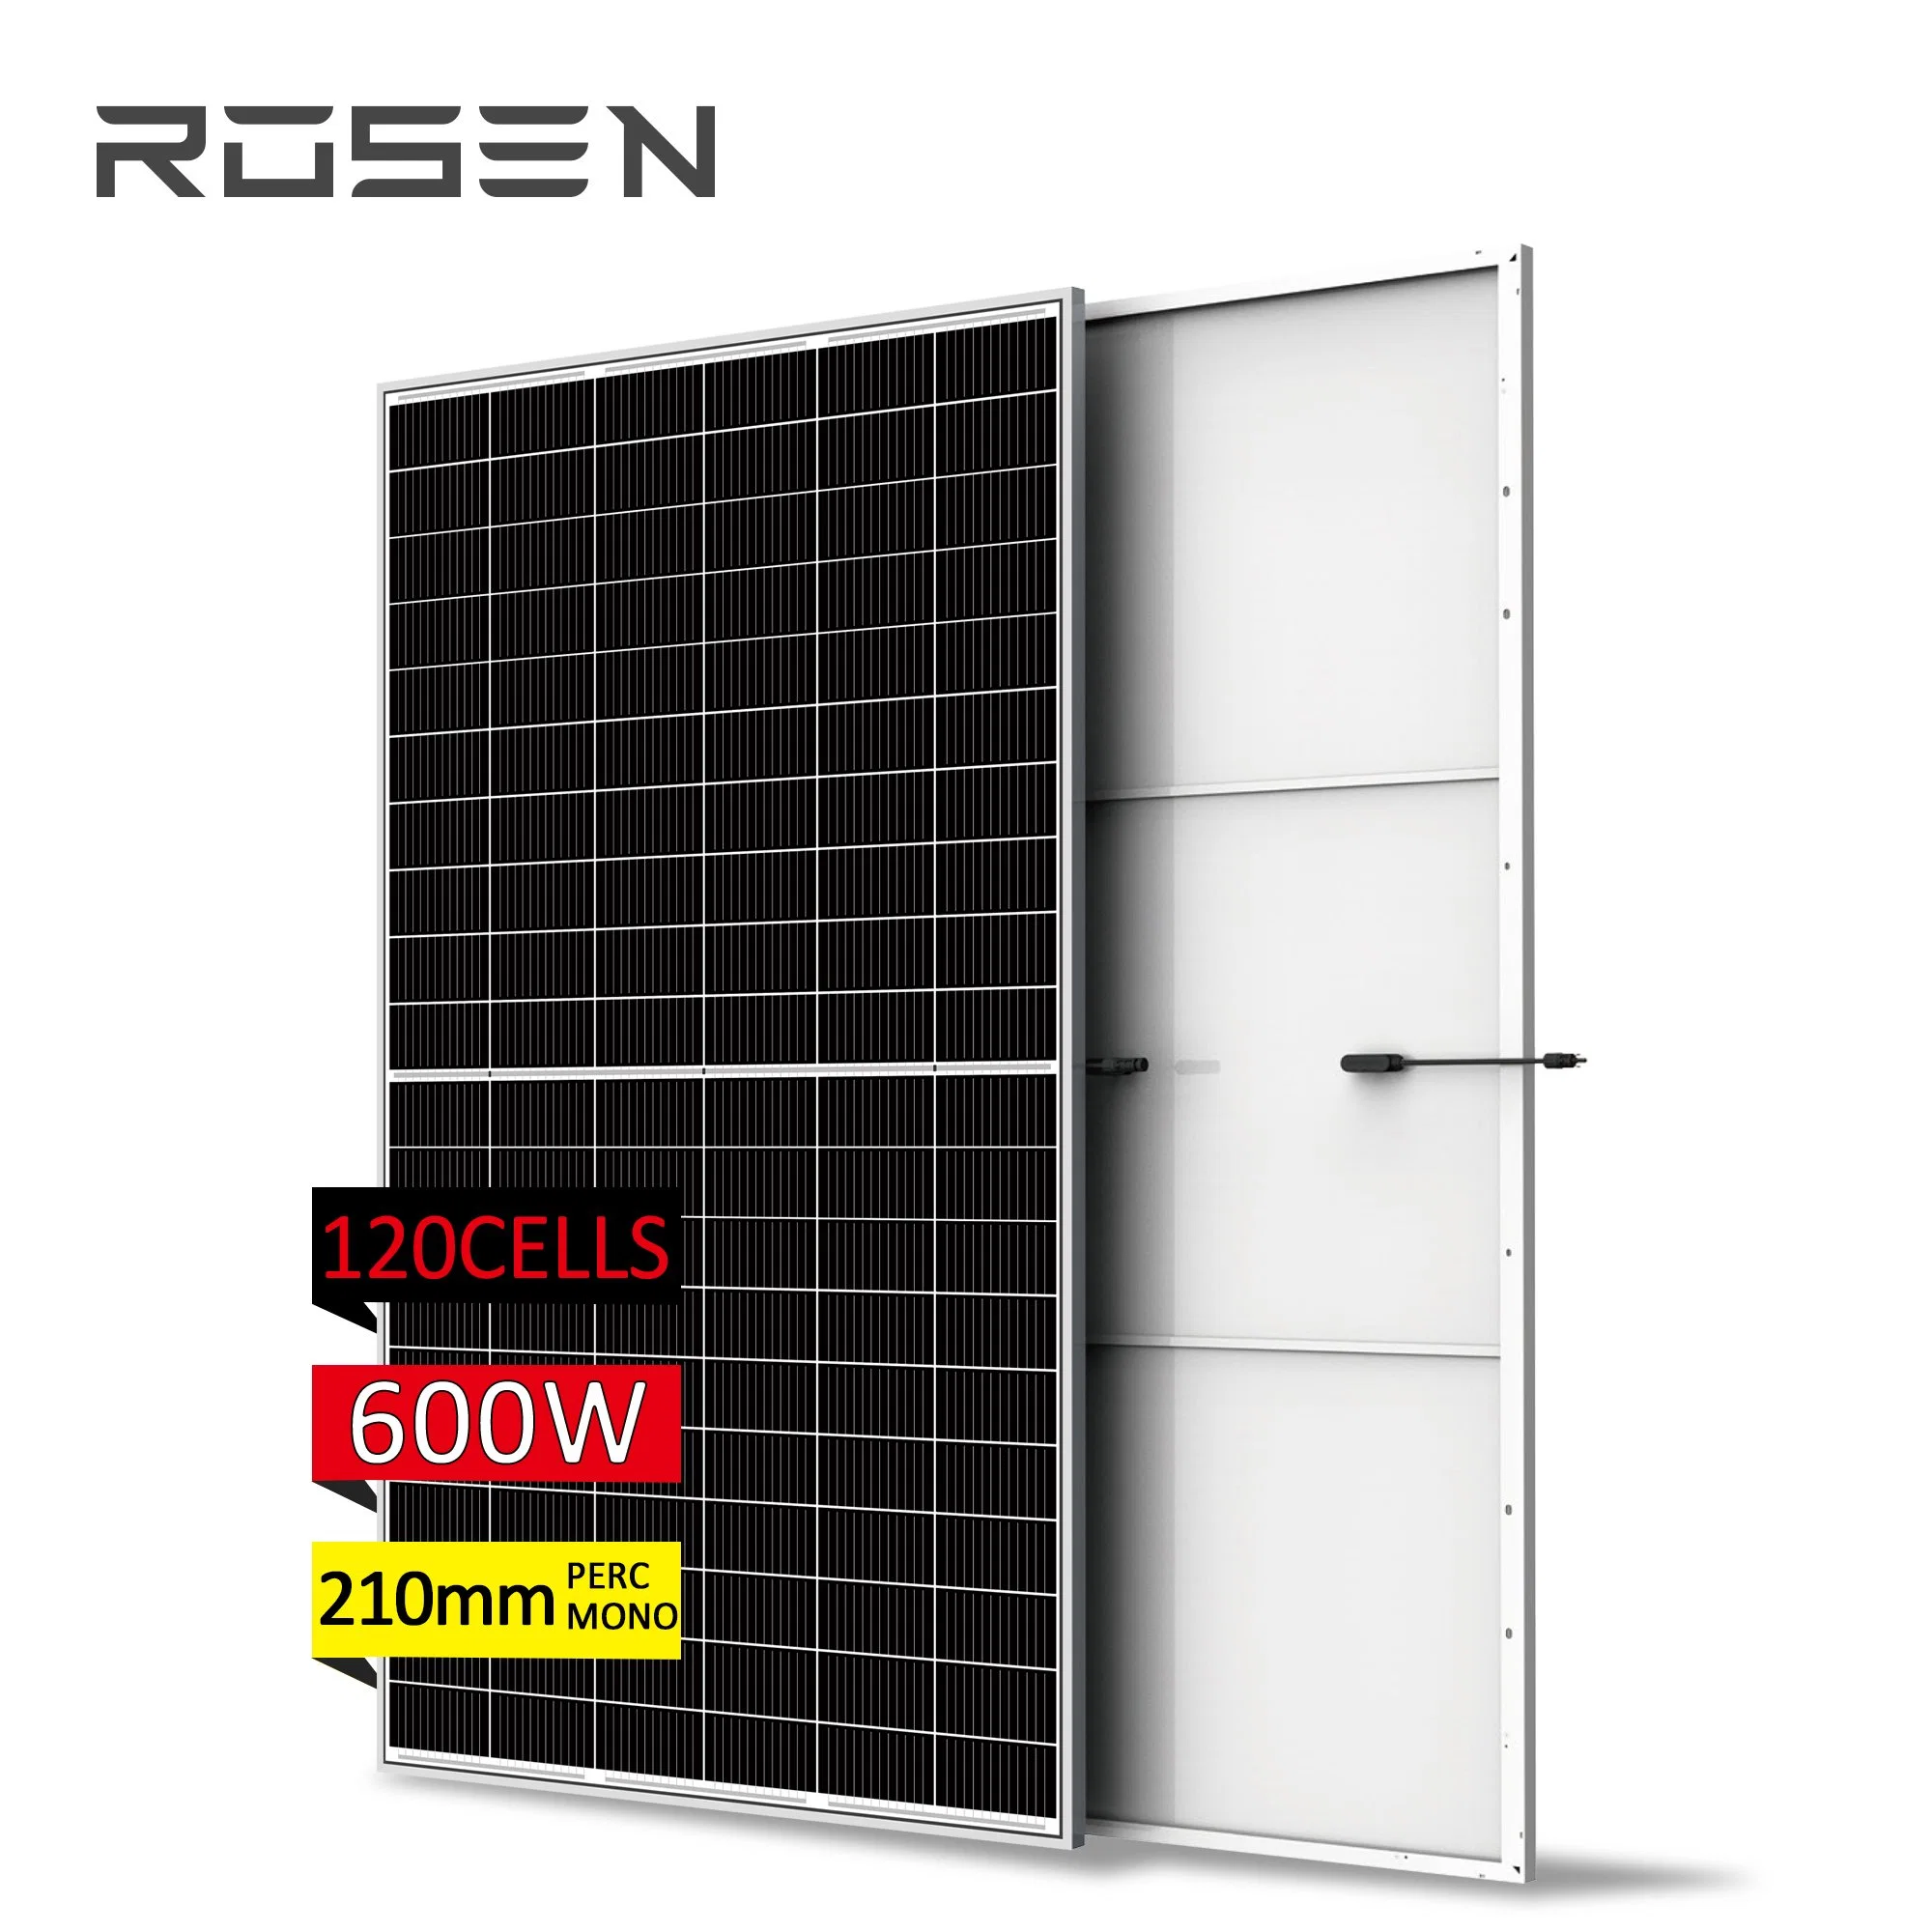 بطارية ثابتة للتخزين الحراري بالطاقة الشمسية طراز Rosen 150kw التخزين